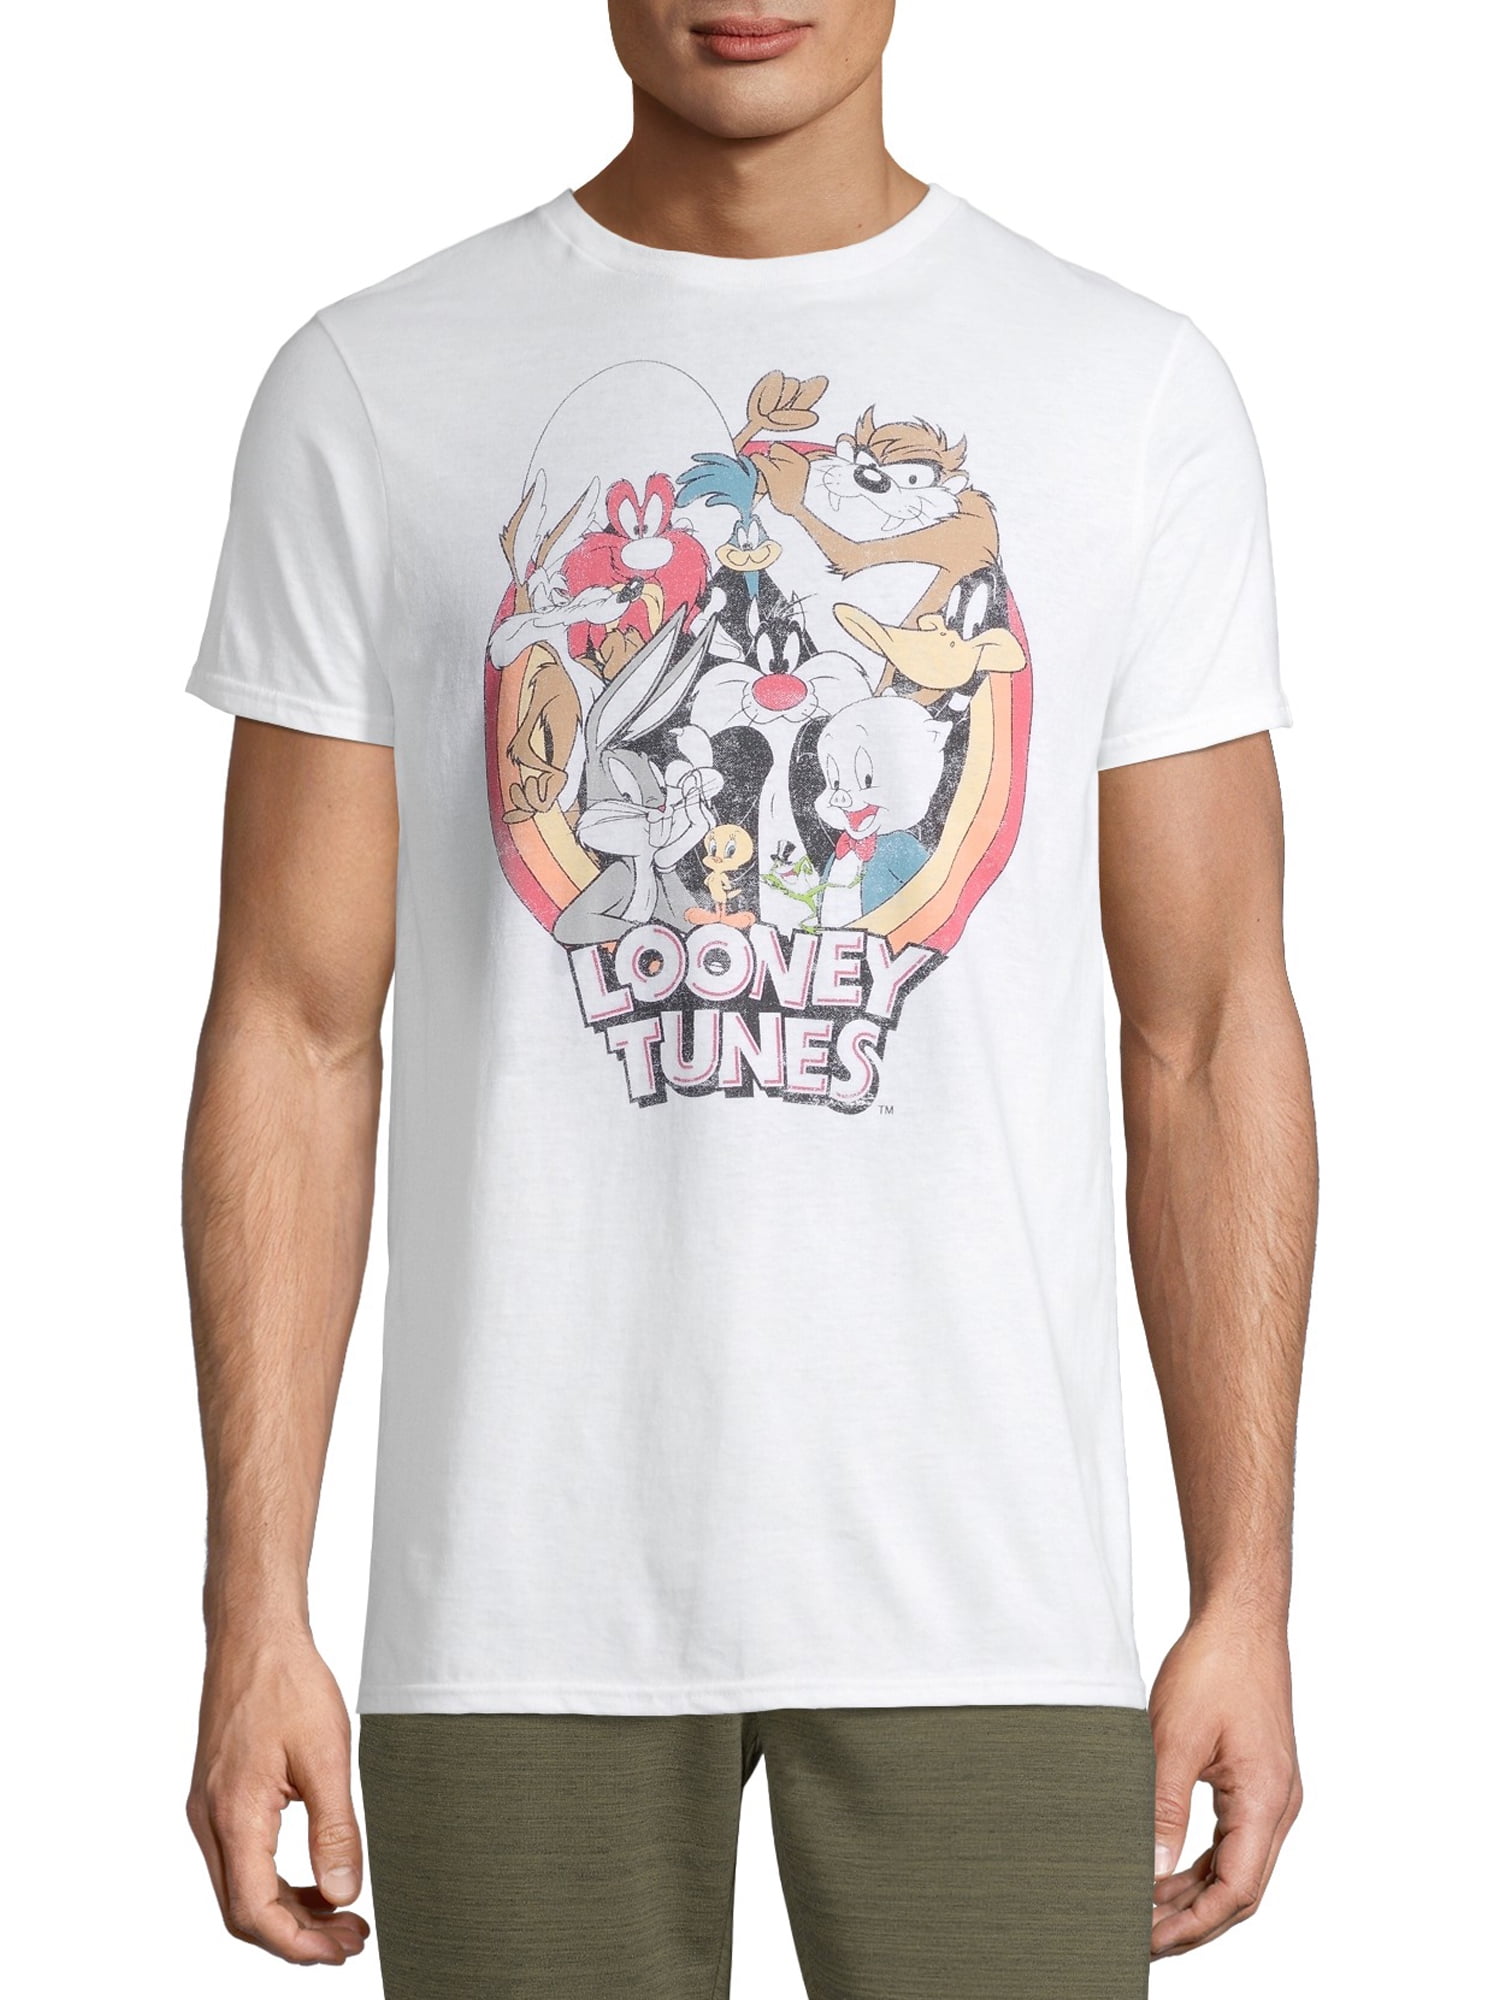 Looney Tunes Retro Men's and Big Men's Graphic T-shirt